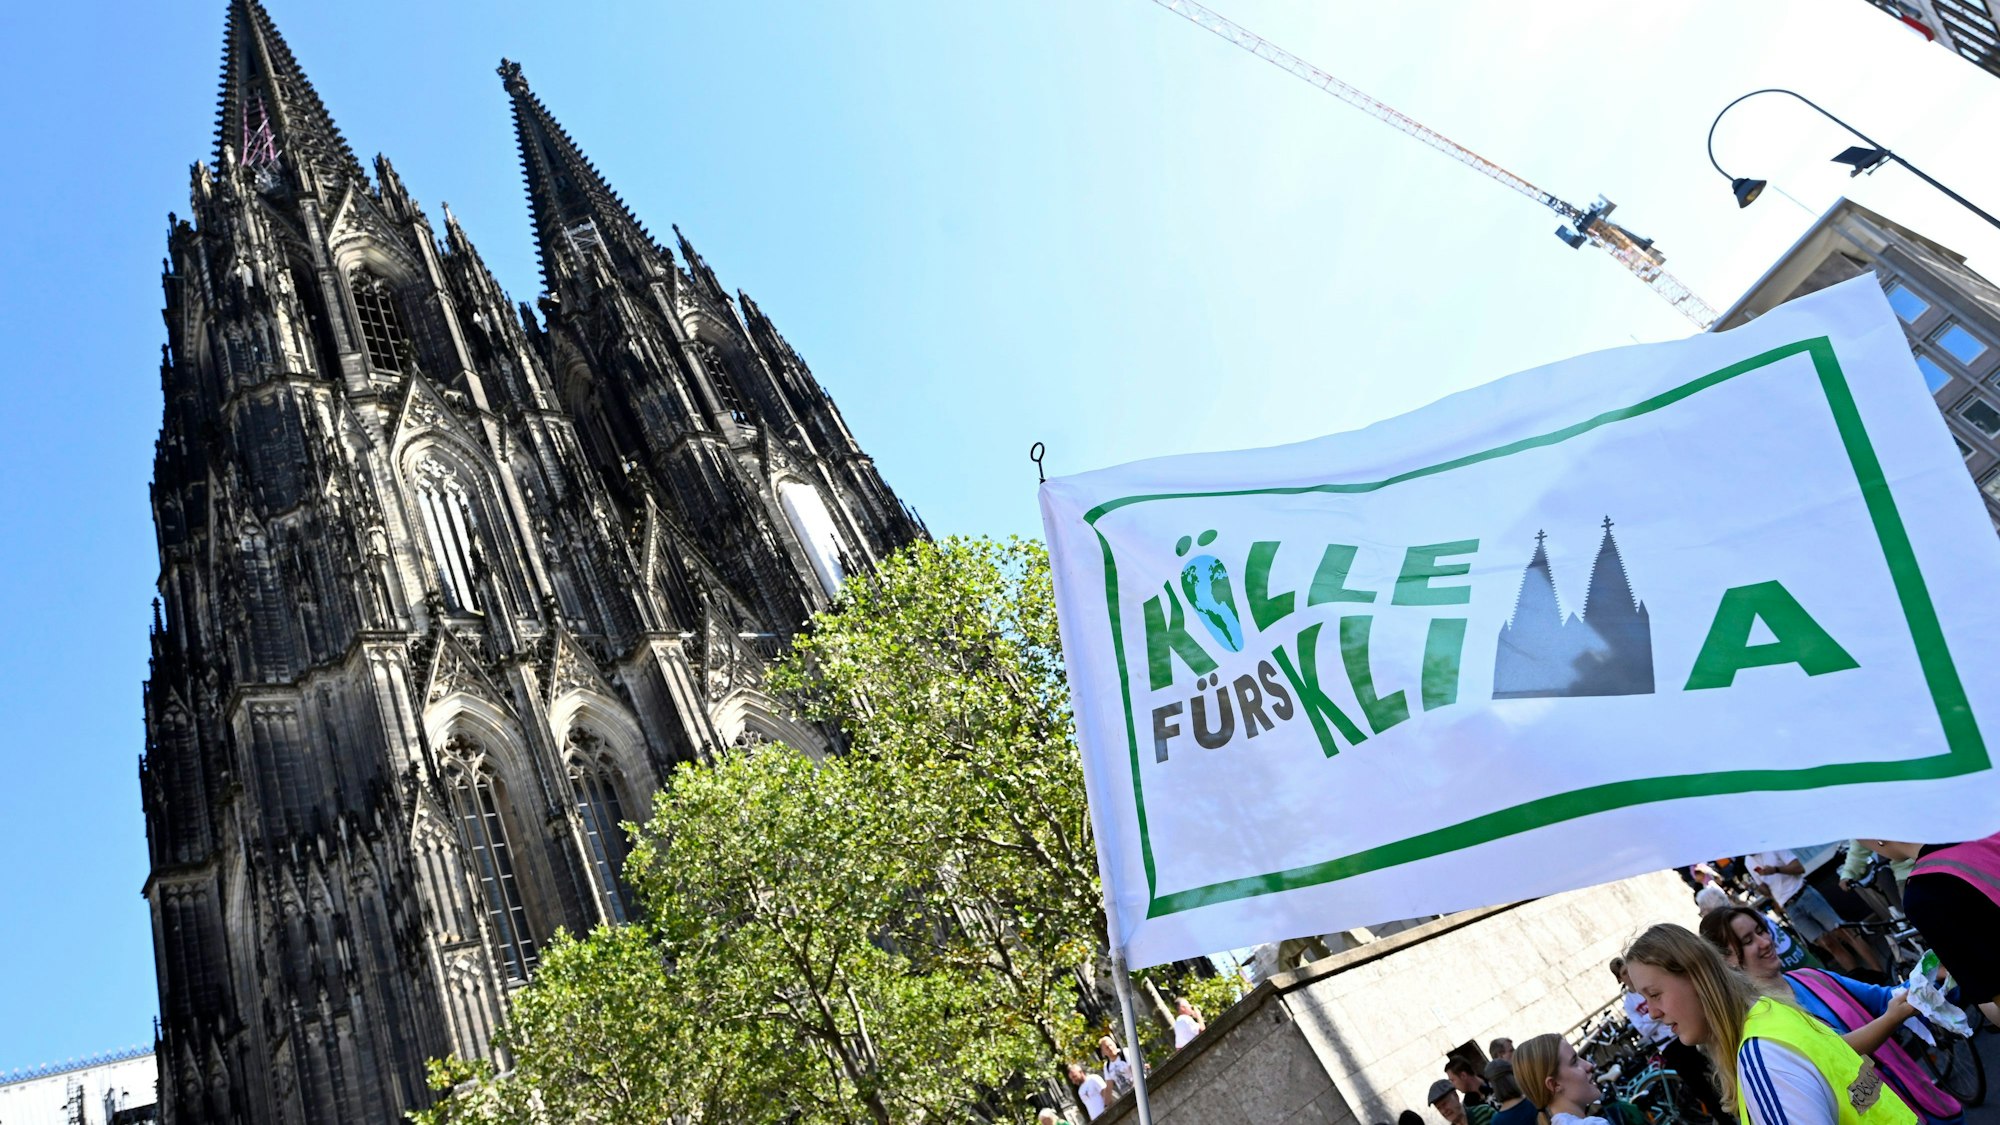 Aktivisten zeigen ihre Fahne vor dem Kölner Dom. Mit mehr als 200 Demonstrationen und Kundgebungen in ganz Deutschland möchte die Klimaschutzbewegung Fridays for Future an diesem Freitag, im Rahmen des globalen Klimastreiks unter dem Motto #EndFossilFuels, die Regierung zu einem schnelleren Ausstieg aus Kohle, l und Gas bewegen.